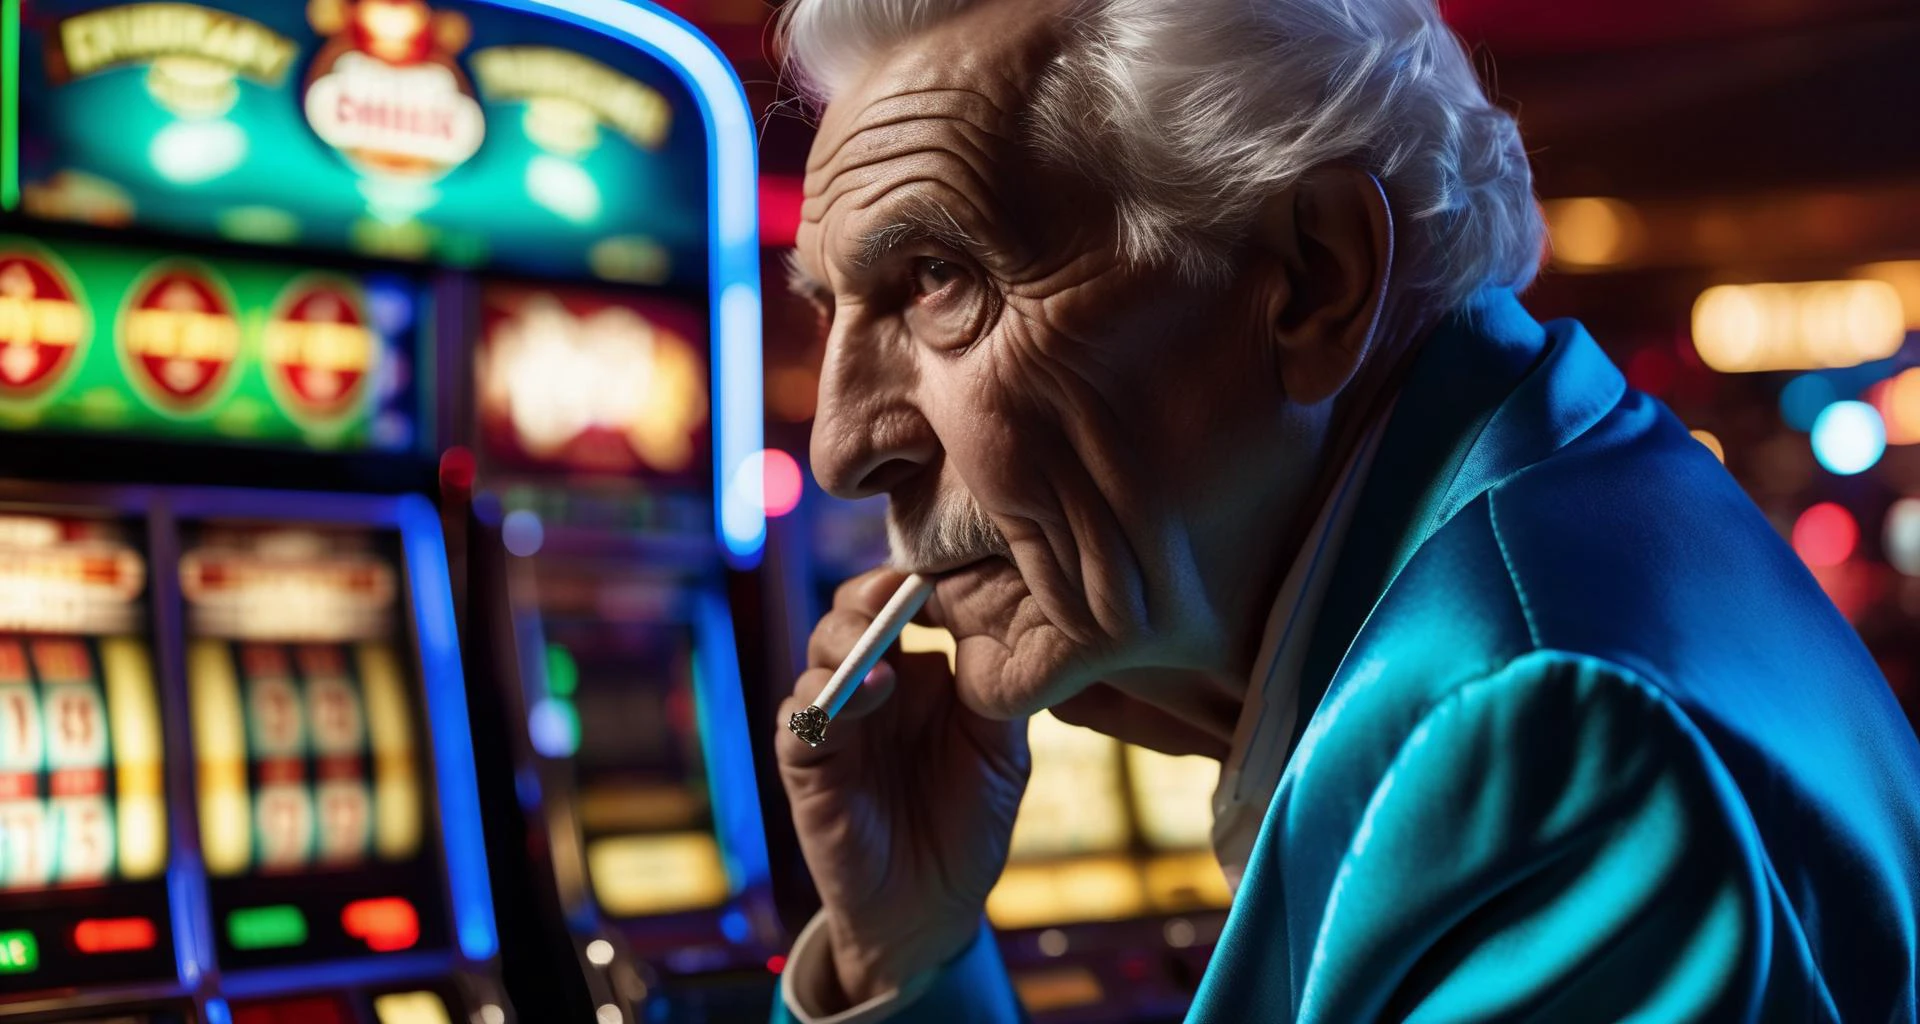 令人驚嘆的獲獎詳細特寫環境彩色肖像照片，照片上是一位堅定的風化皺紋老人 (抽煙:1.2) 祖父在拉斯維加斯玩老虎機，穿著一件凌亂的閃亮運動外套，電影般的夜間輝煌逼真, 鮮豔的色彩